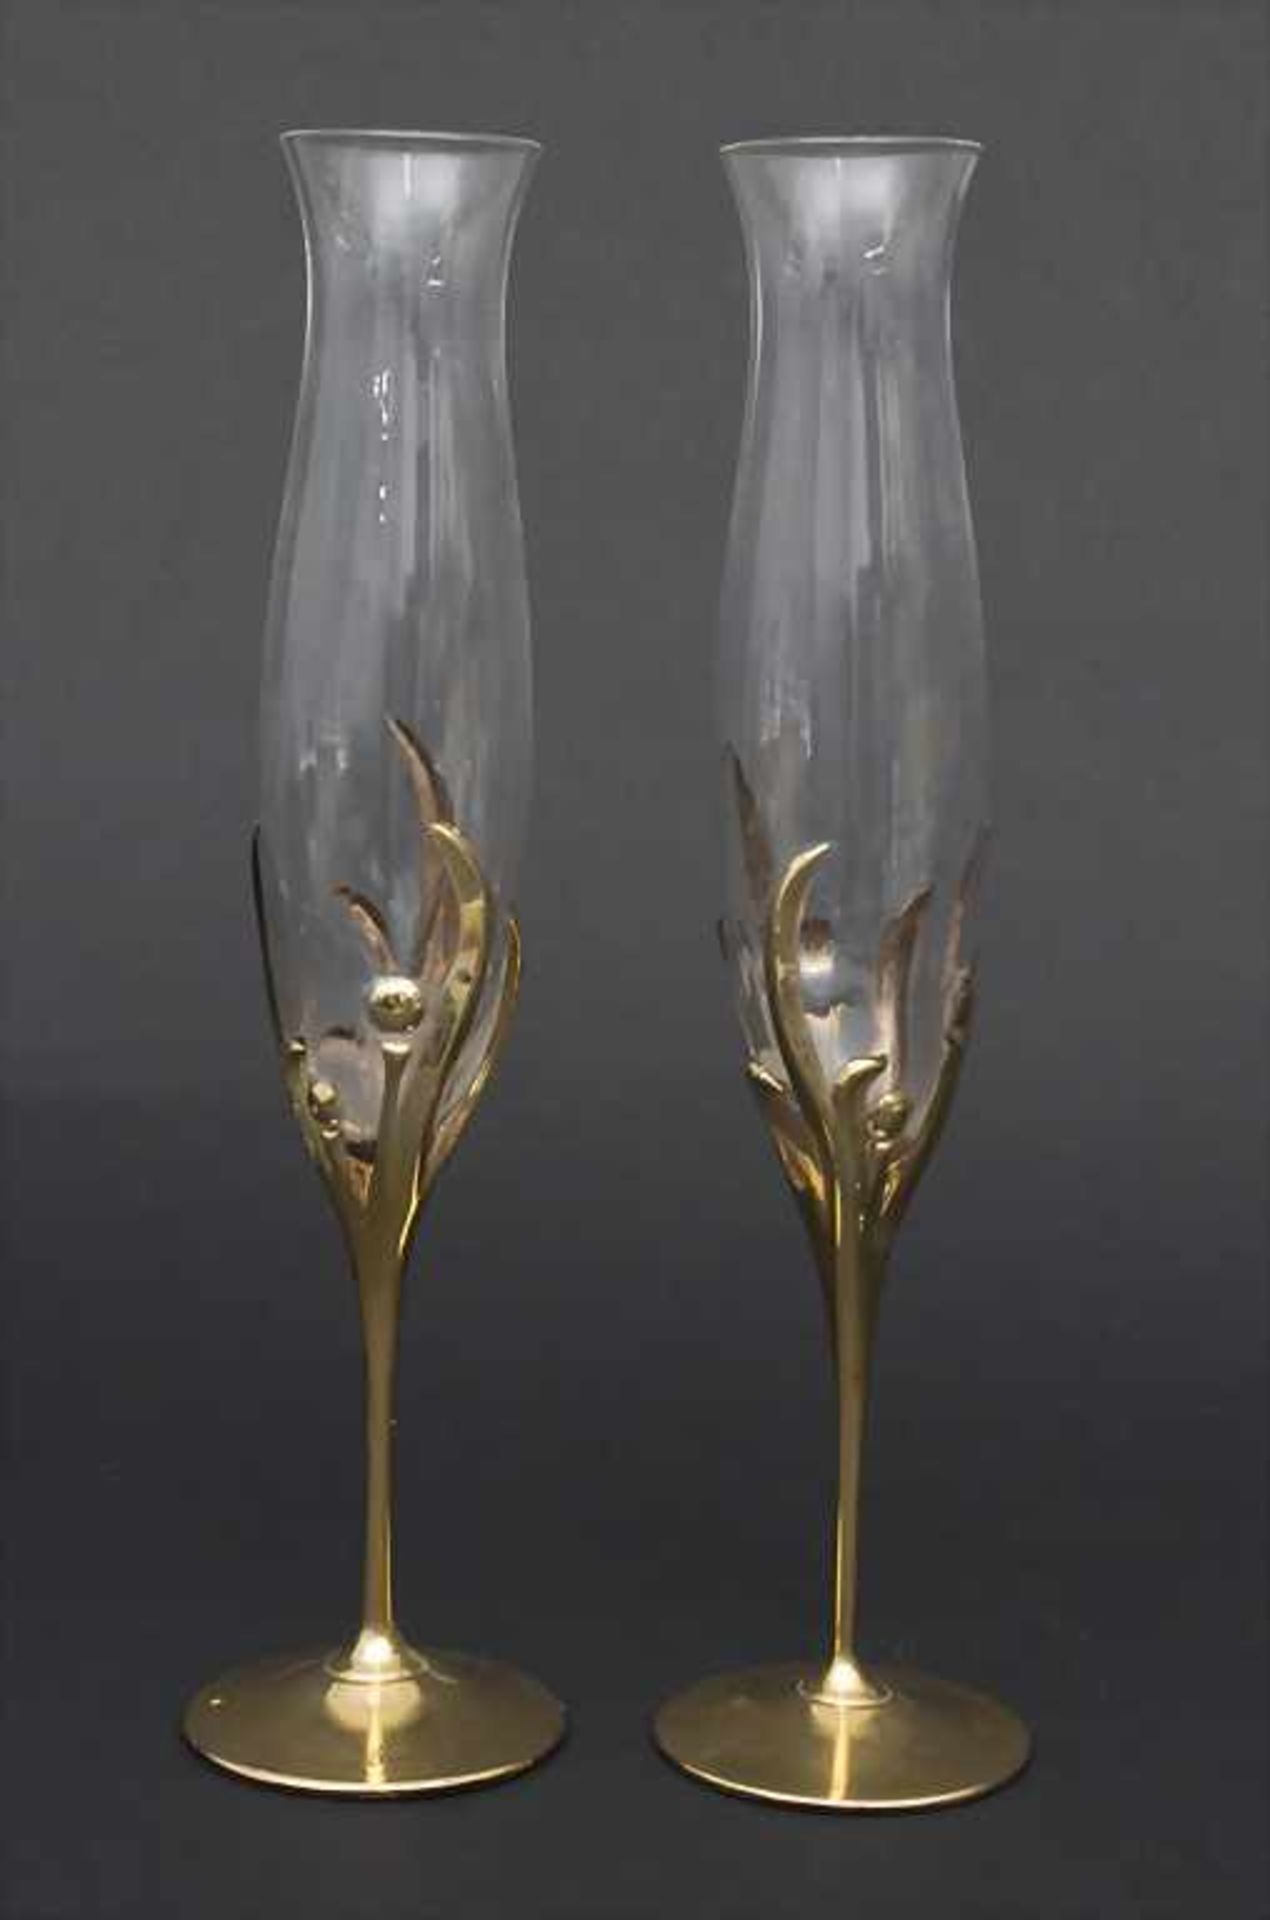 Sektflasche mit zwei Flöten / A champagne bottle with 2 glasses, Luigi Colani, - Bild 3 aus 5